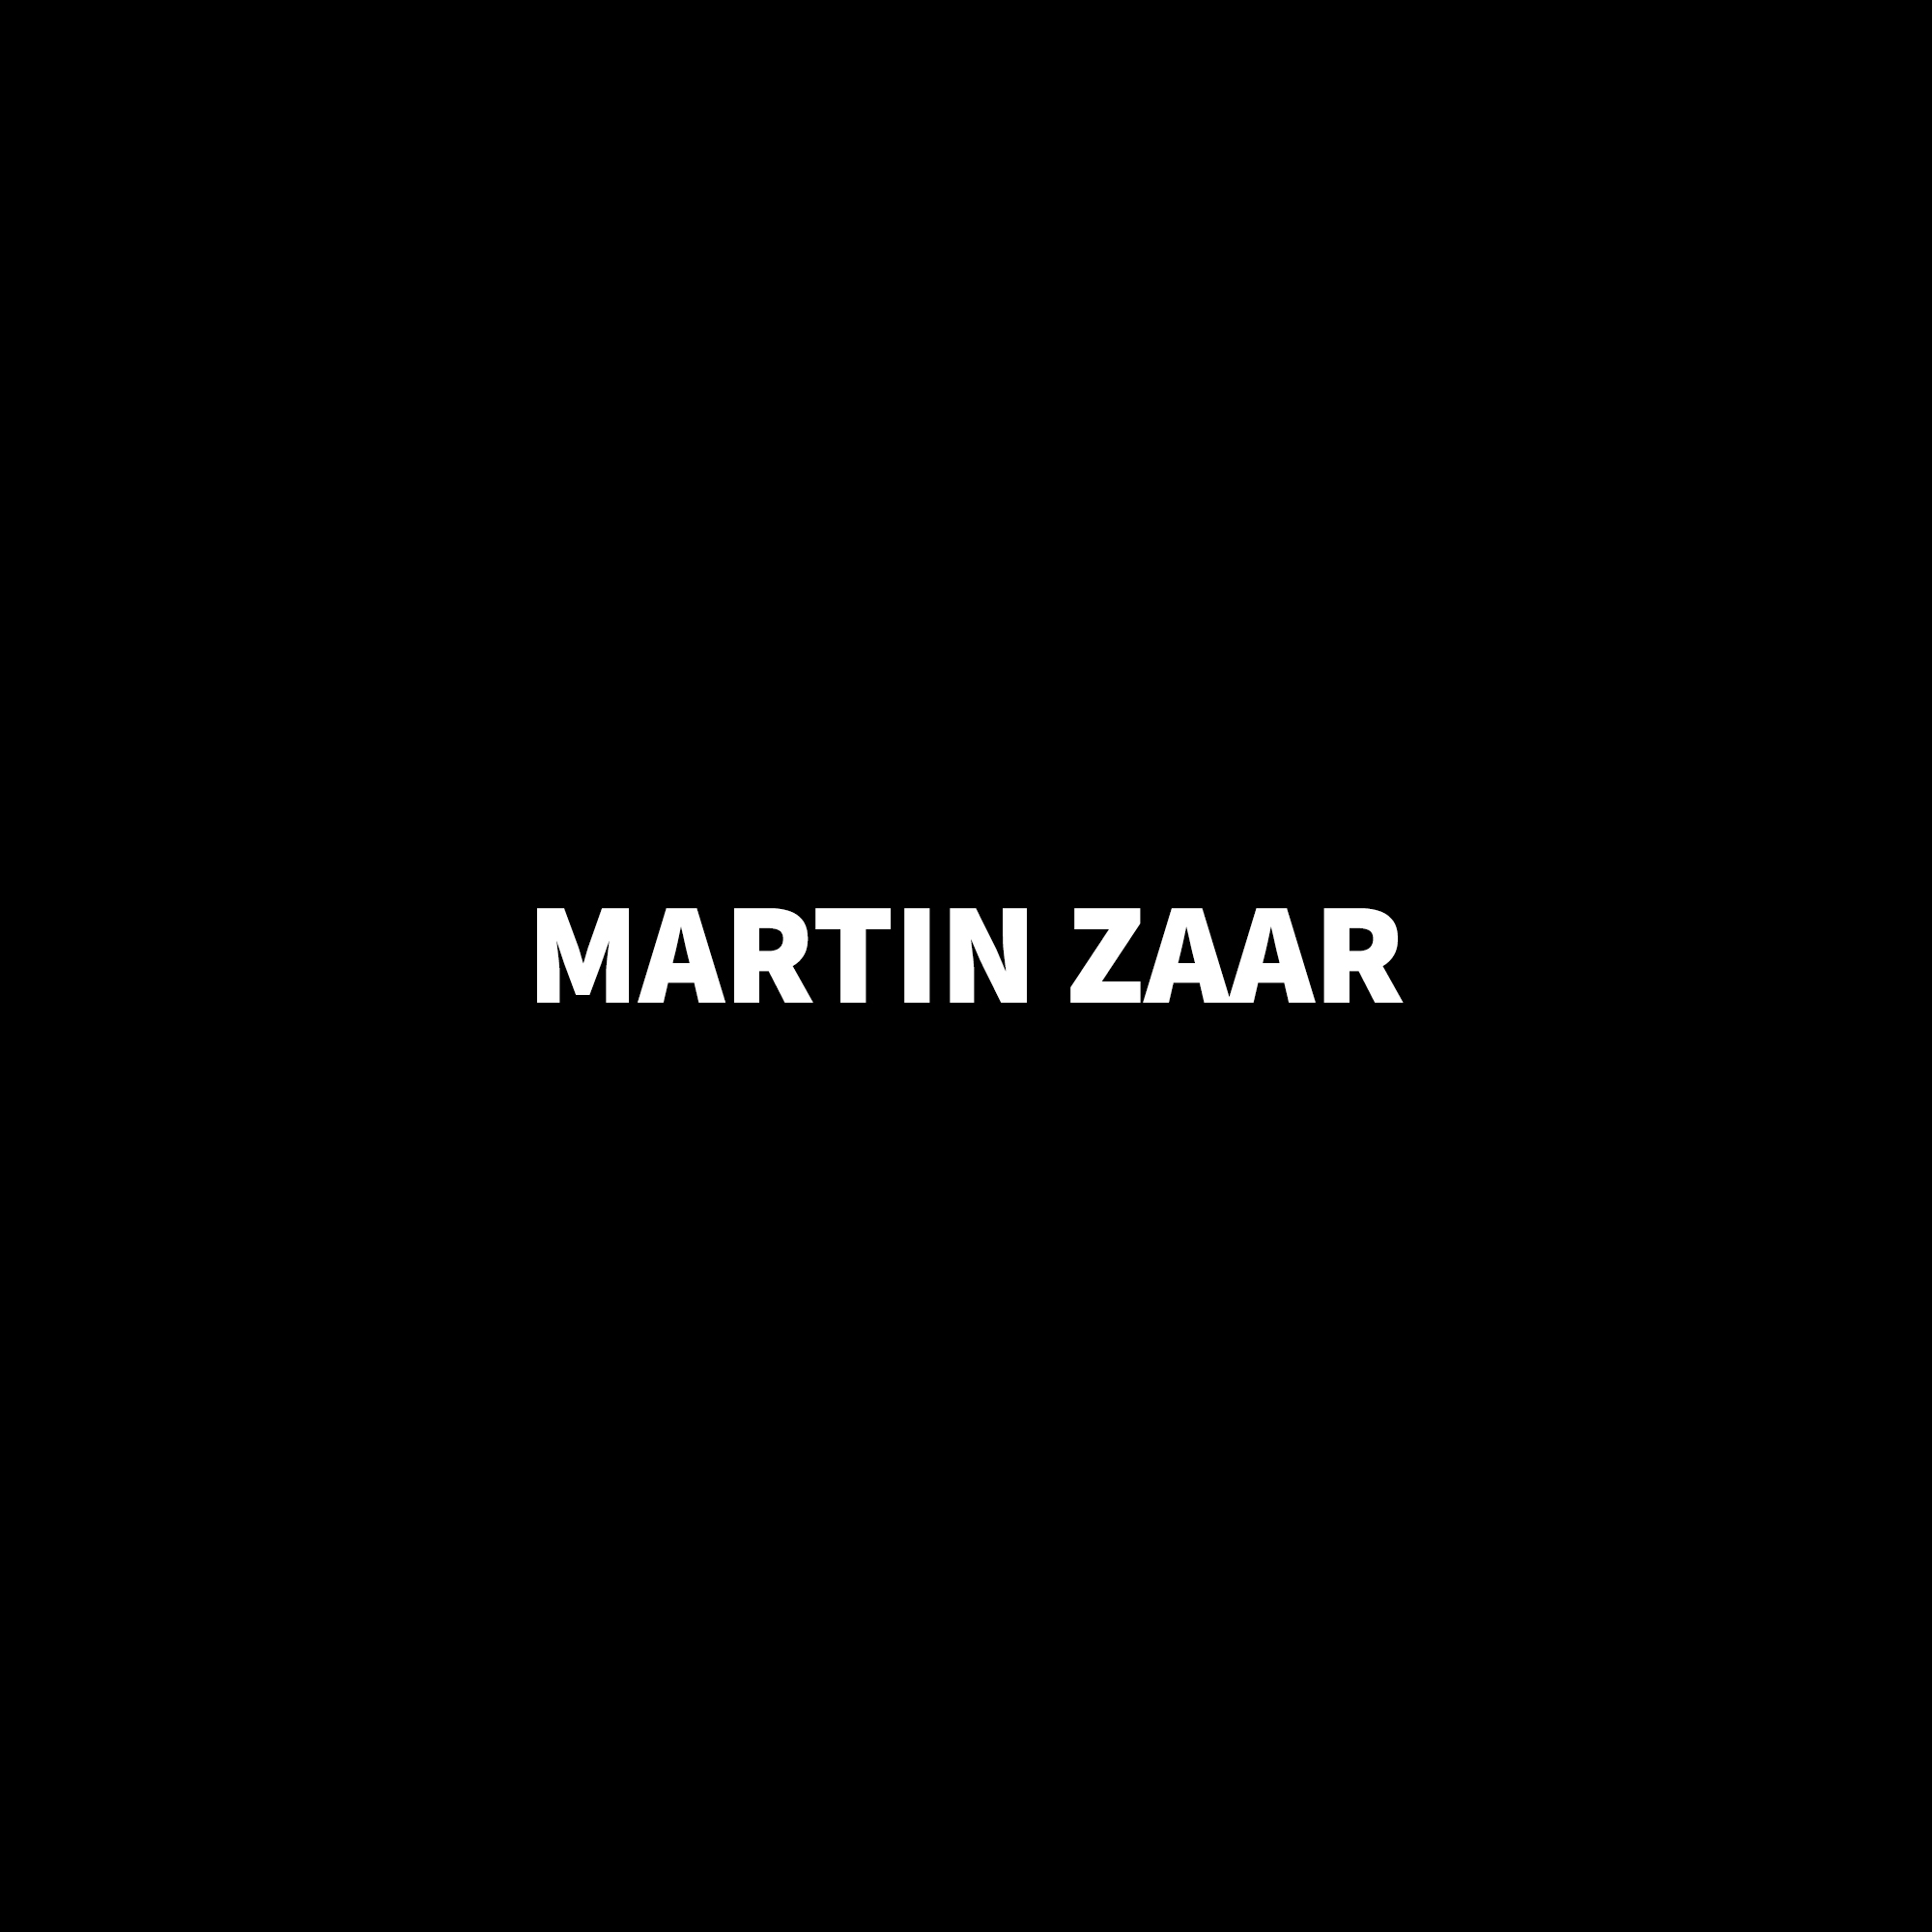 Martin Zaar